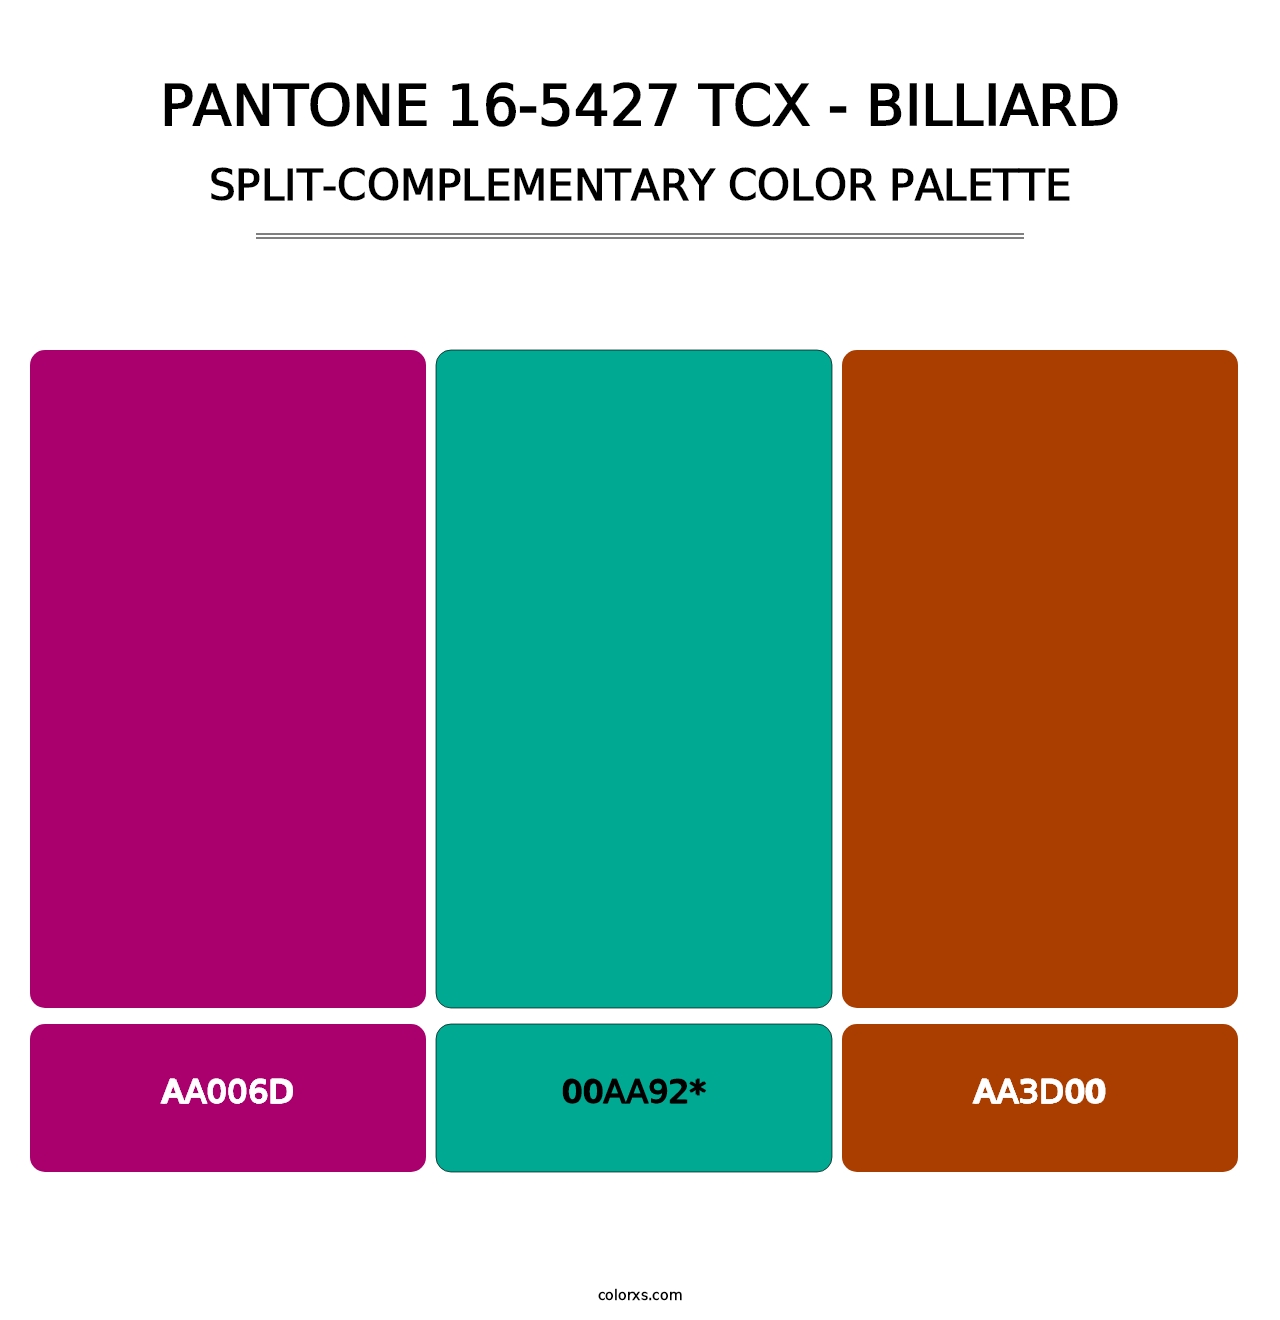 PANTONE 16-5427 TCX - Billiard - Split-Complementary Color Palette